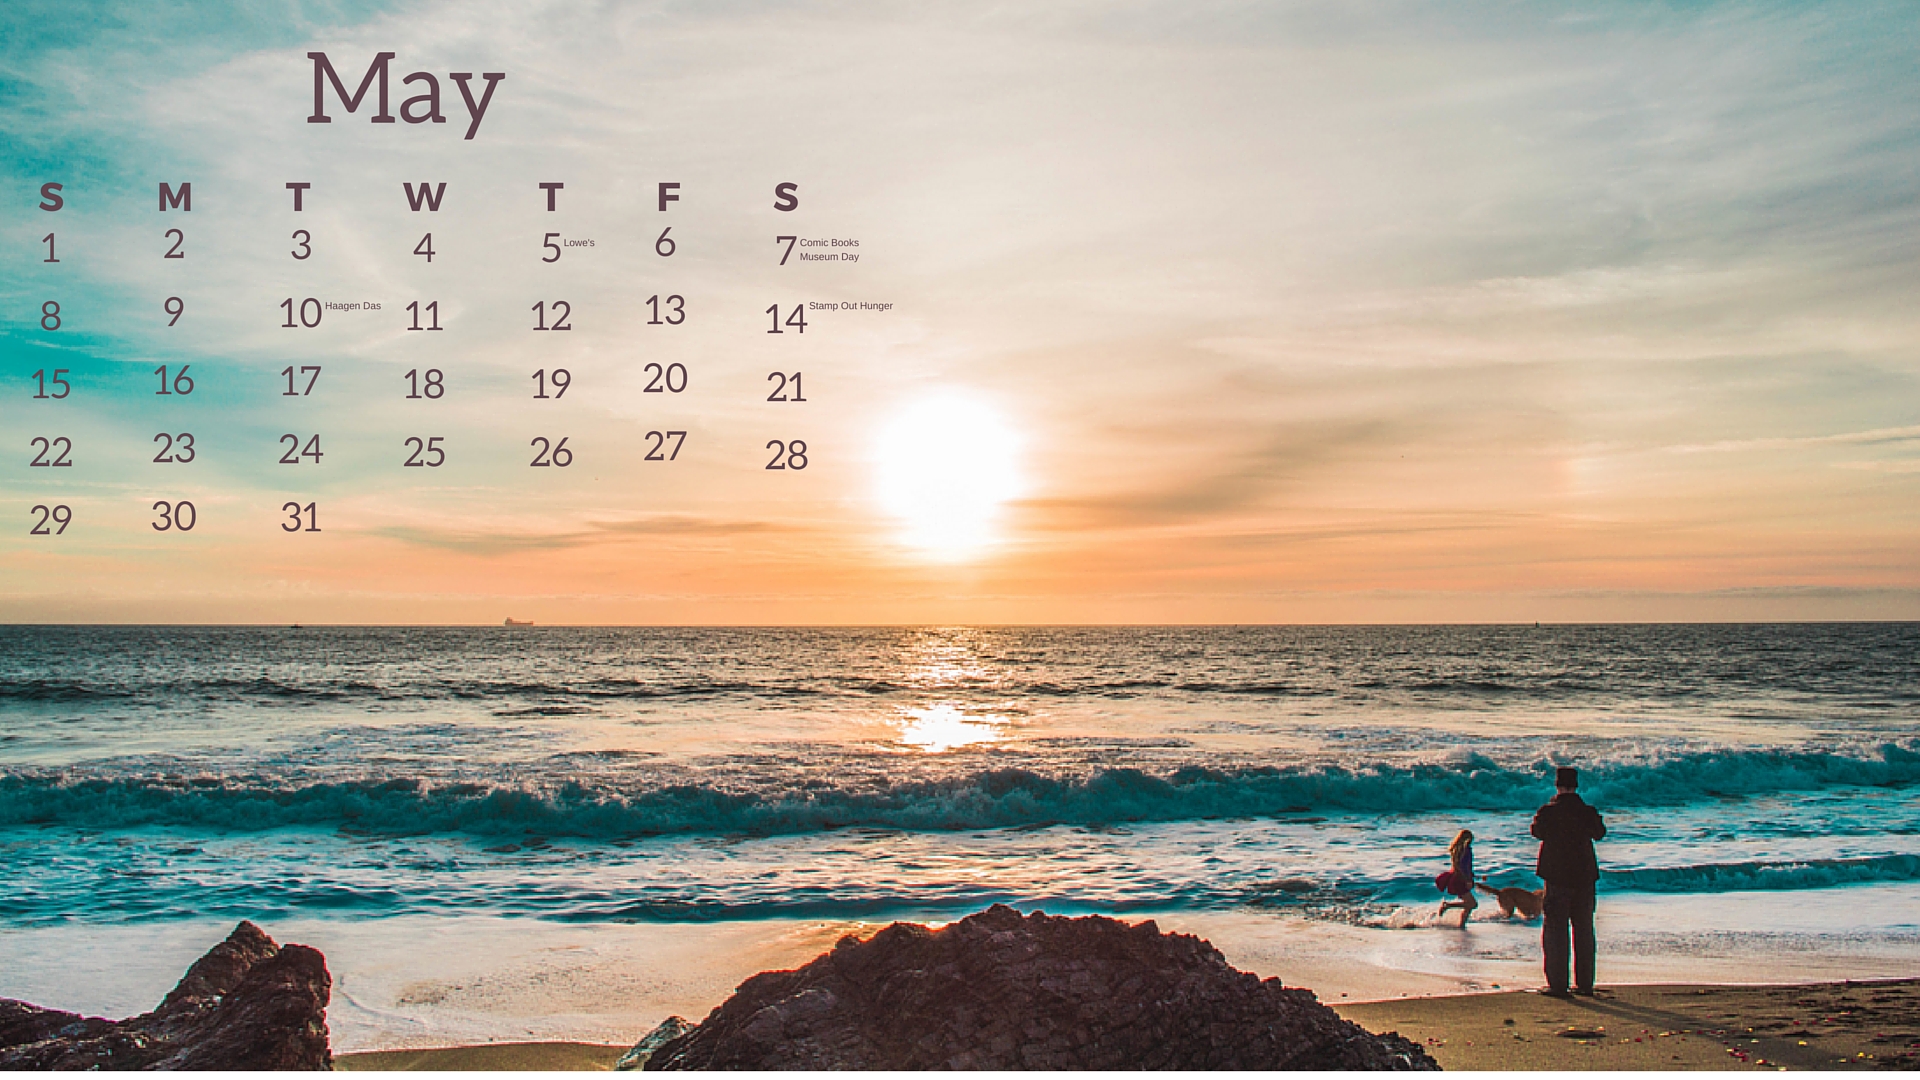 custom desktop photo calendar